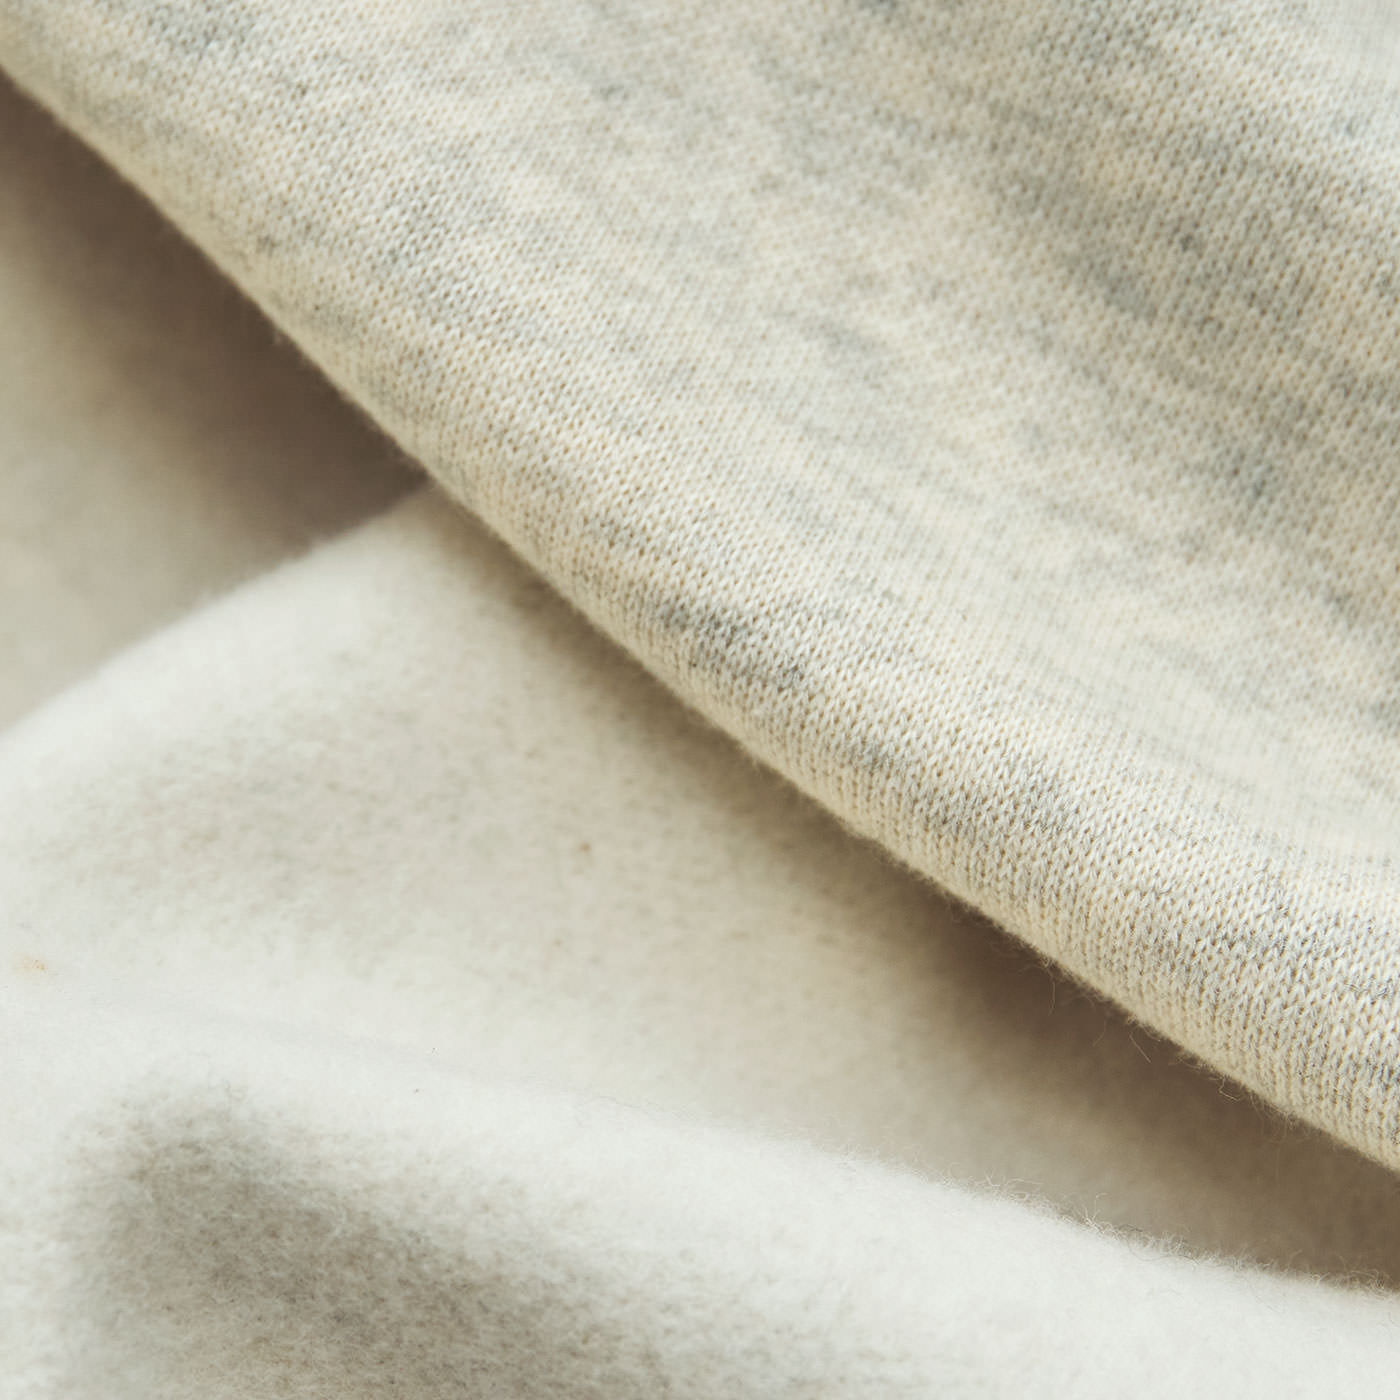 Real Stock|Live love cottonプロジェクト　el:ment×HAyU　白くまのワイヤーアートを愉しむ　オーガニックコットンの裏起毛トレーナー〈白くまの波乗り〉|オーガニックコットンのきれいめな表面感のスウェット素材。肌側は裏起毛で、包まれるような肌心地。